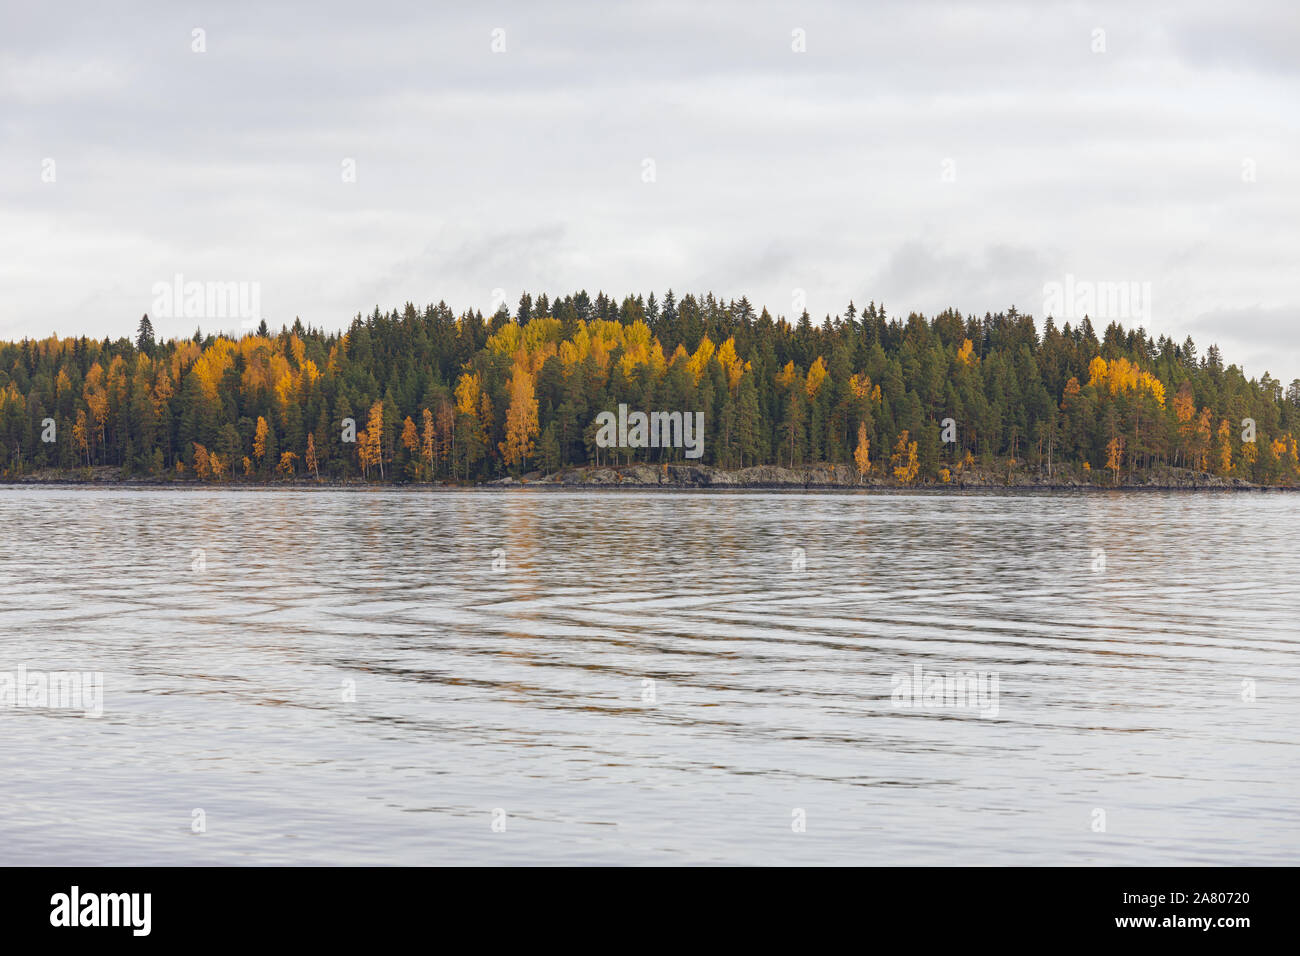 Le feuillage des arbres forestiers en couleurs d'automne au bord du lac nature background Banque D'Images